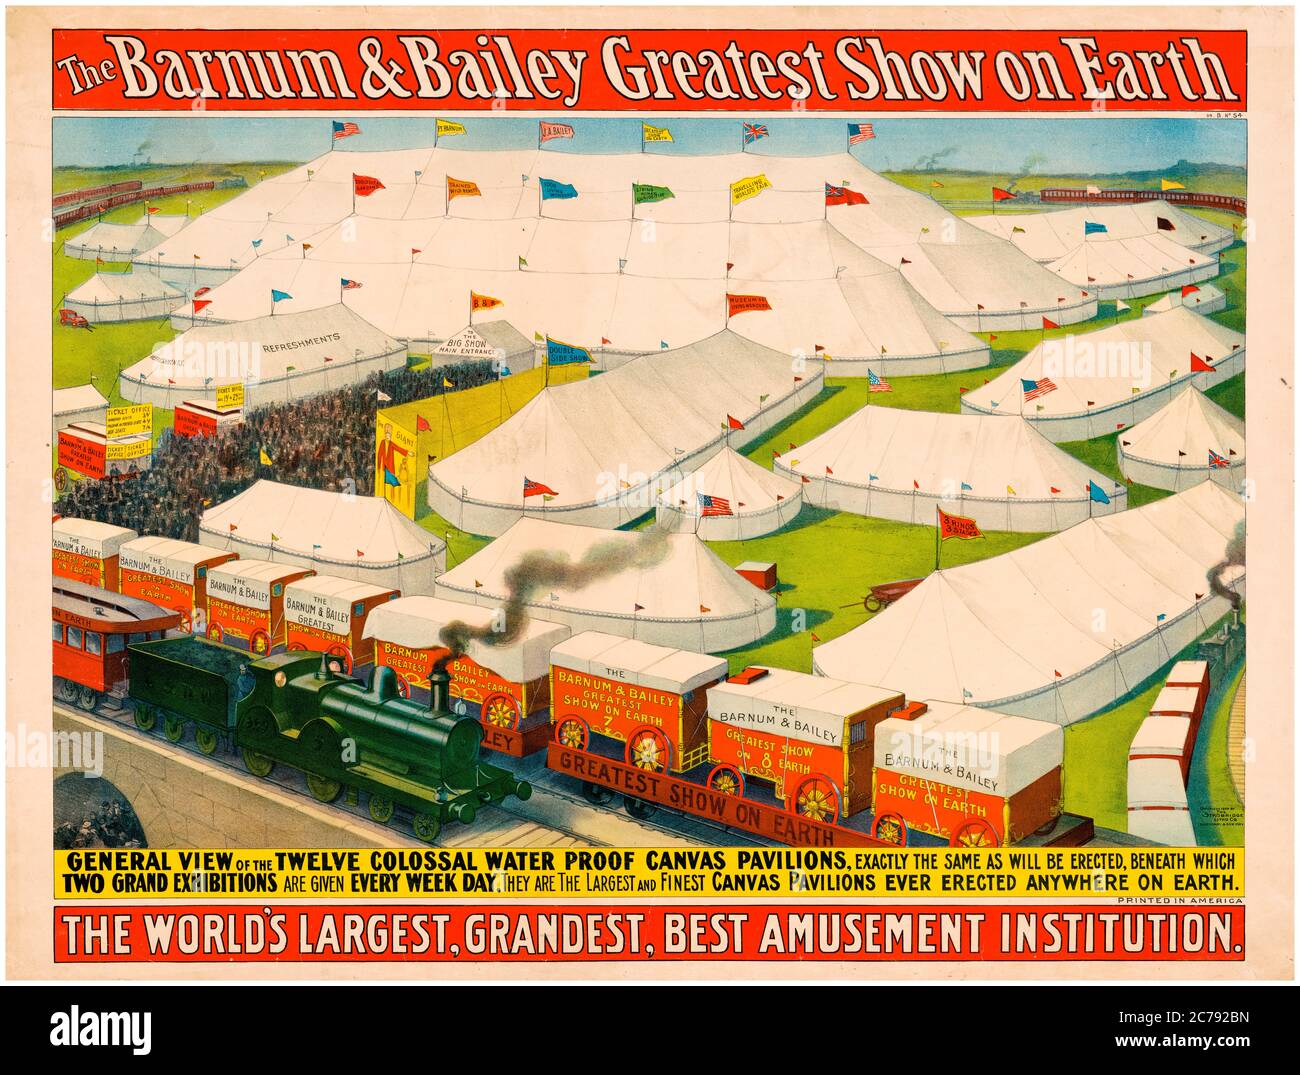 El cartel del circo Barnum & Bailey Greatest Show on Earth, alrededor de 1899 Foto de stock